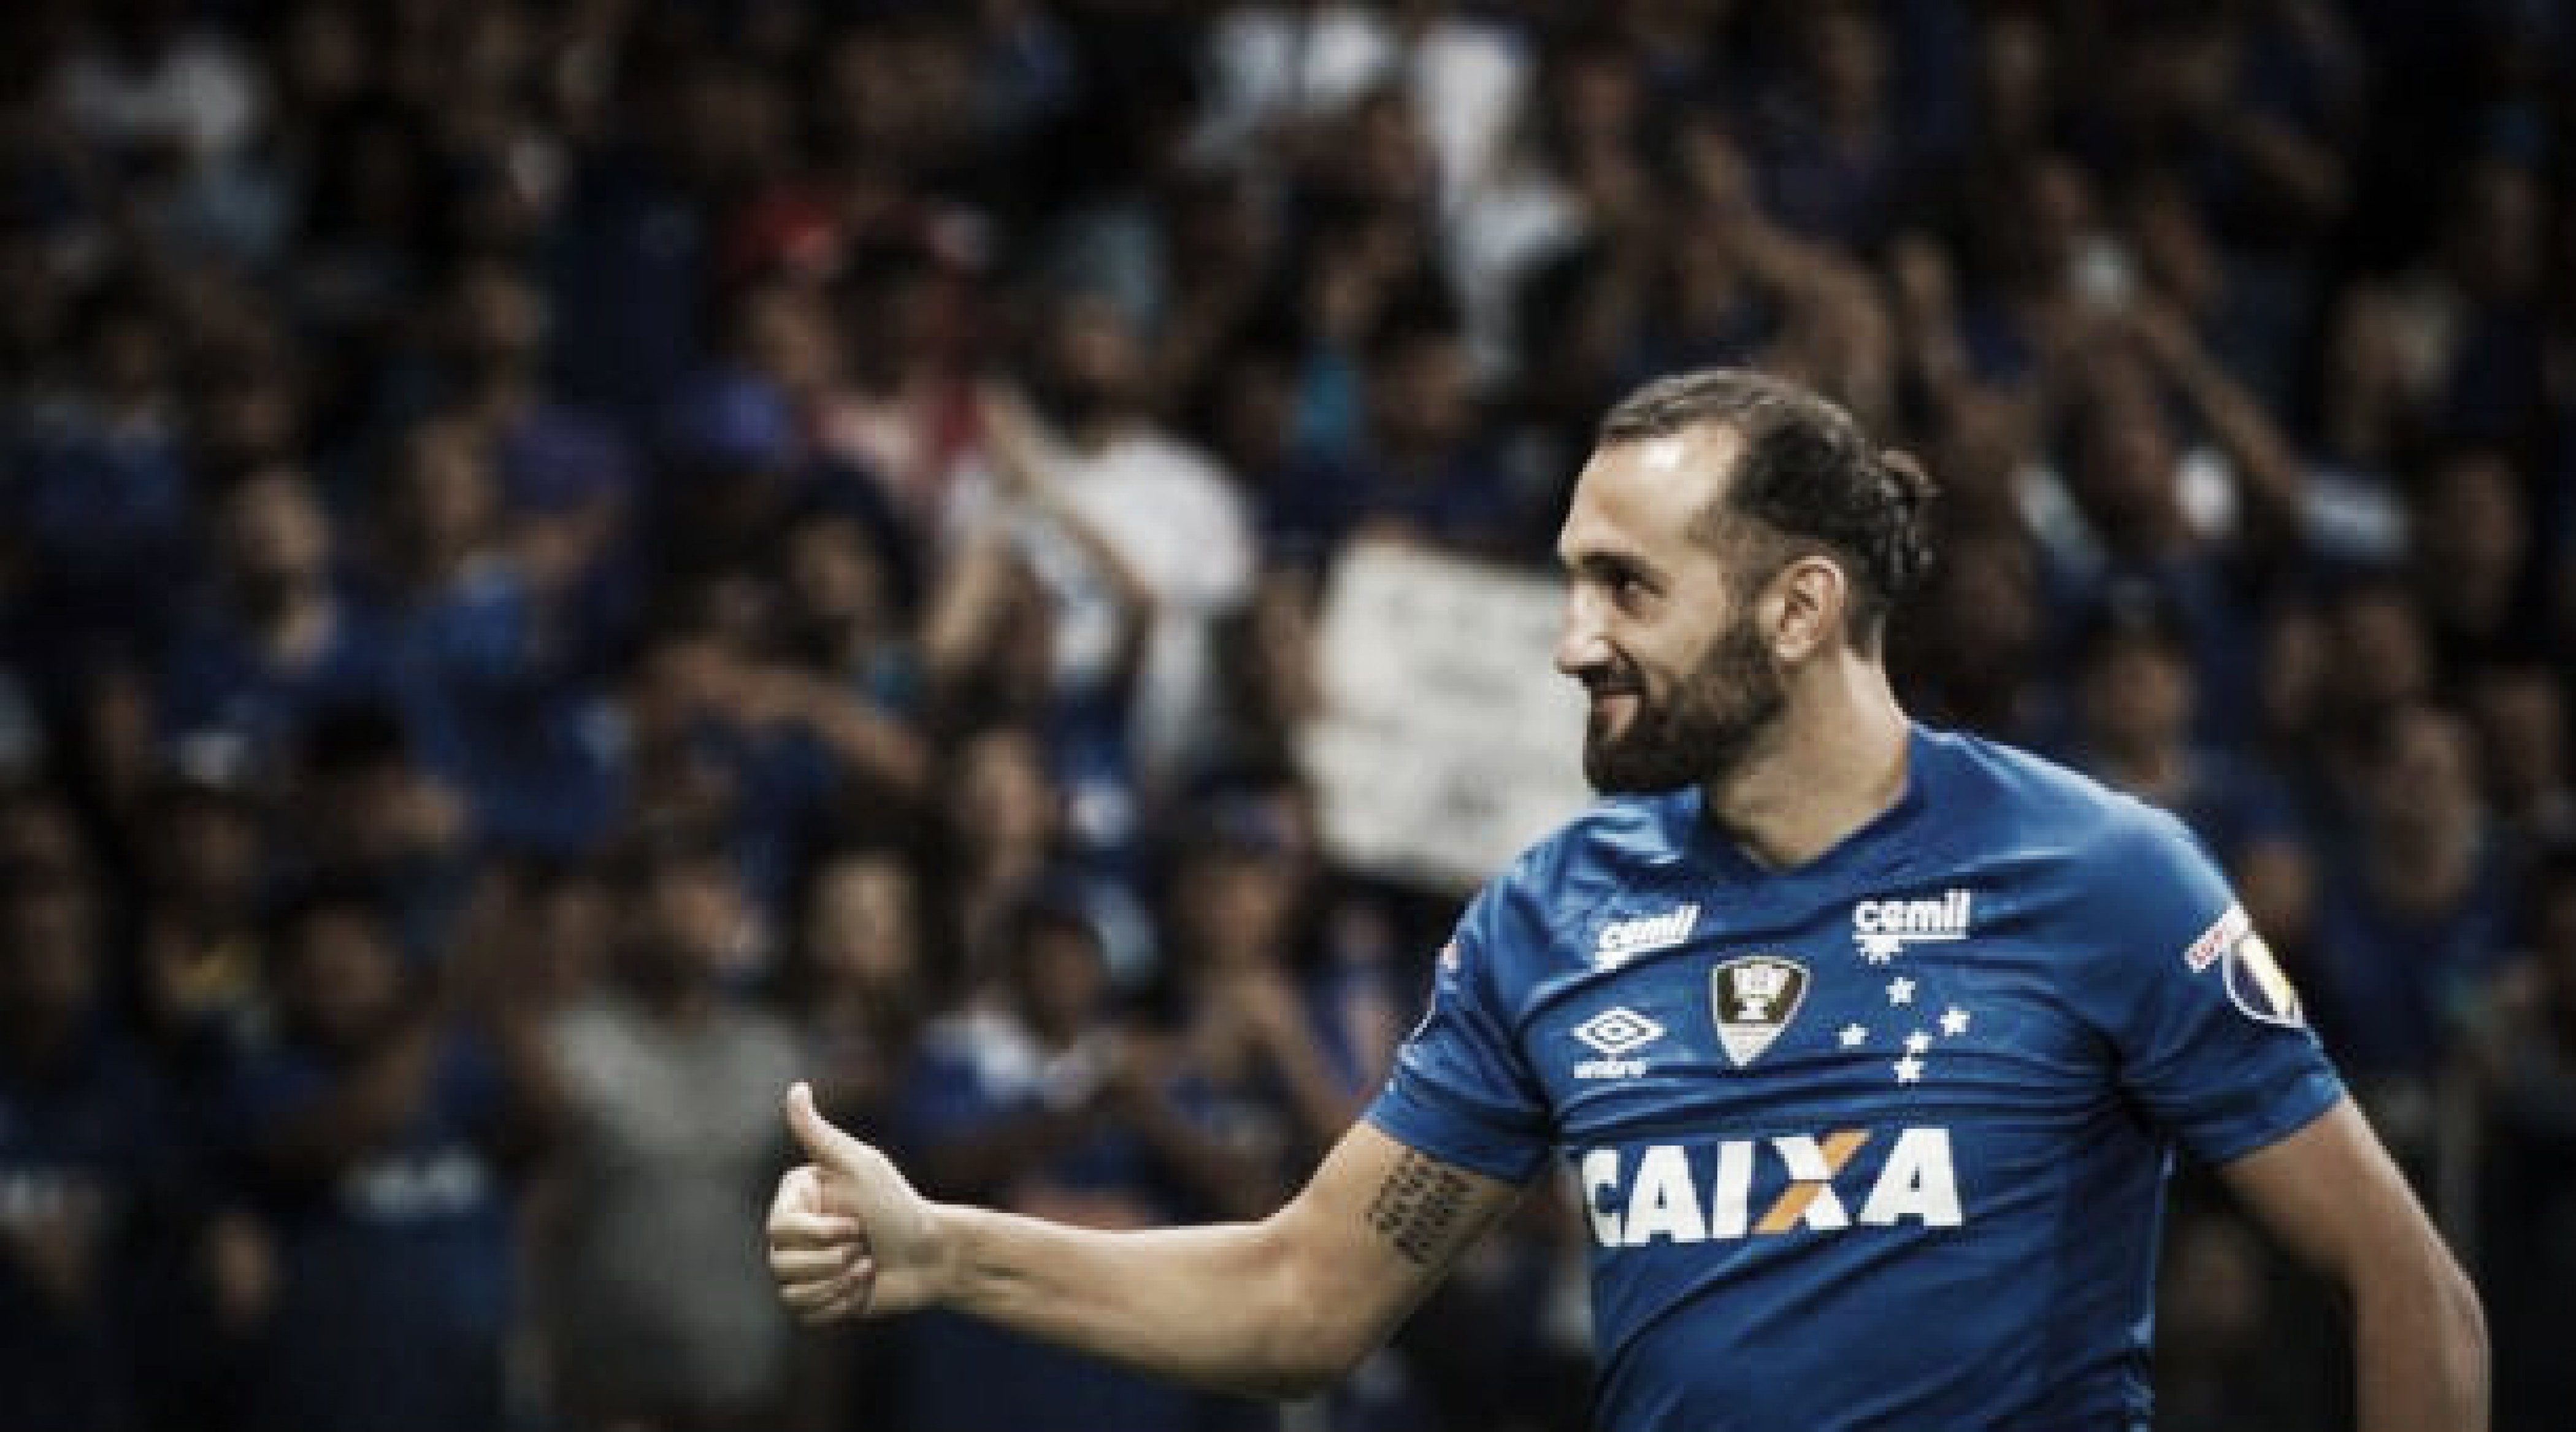 ¿Cómo llega Cruzeiro al pleito de este miércoles?